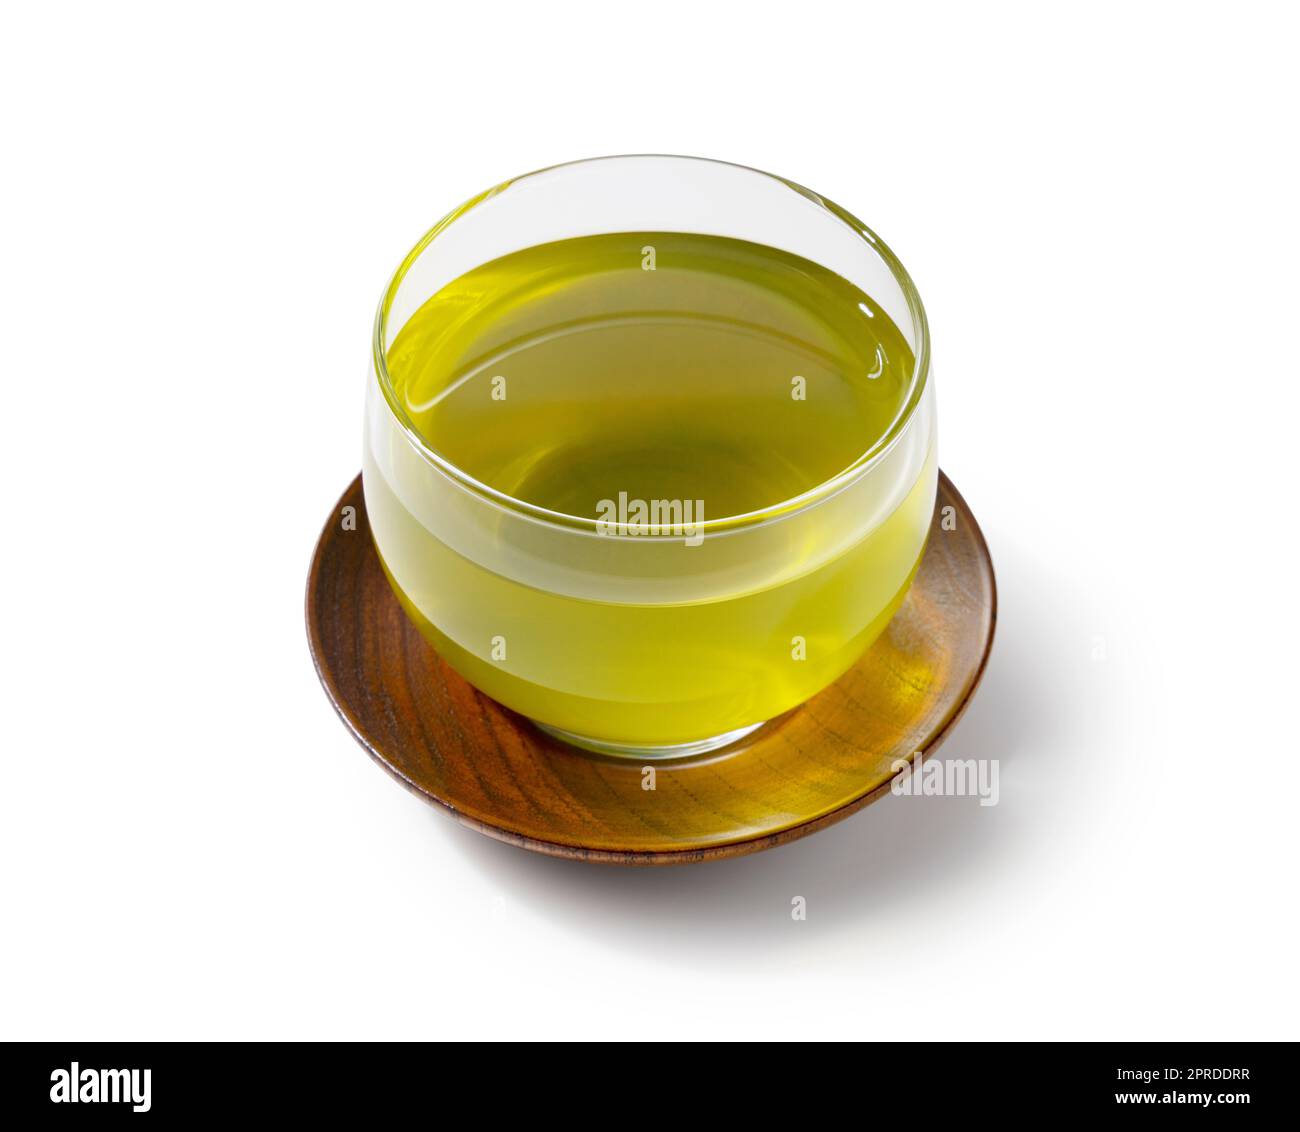 Kalter japanischer grüner Tee vor weißem Hintergrund Stockfotografie - Alamy